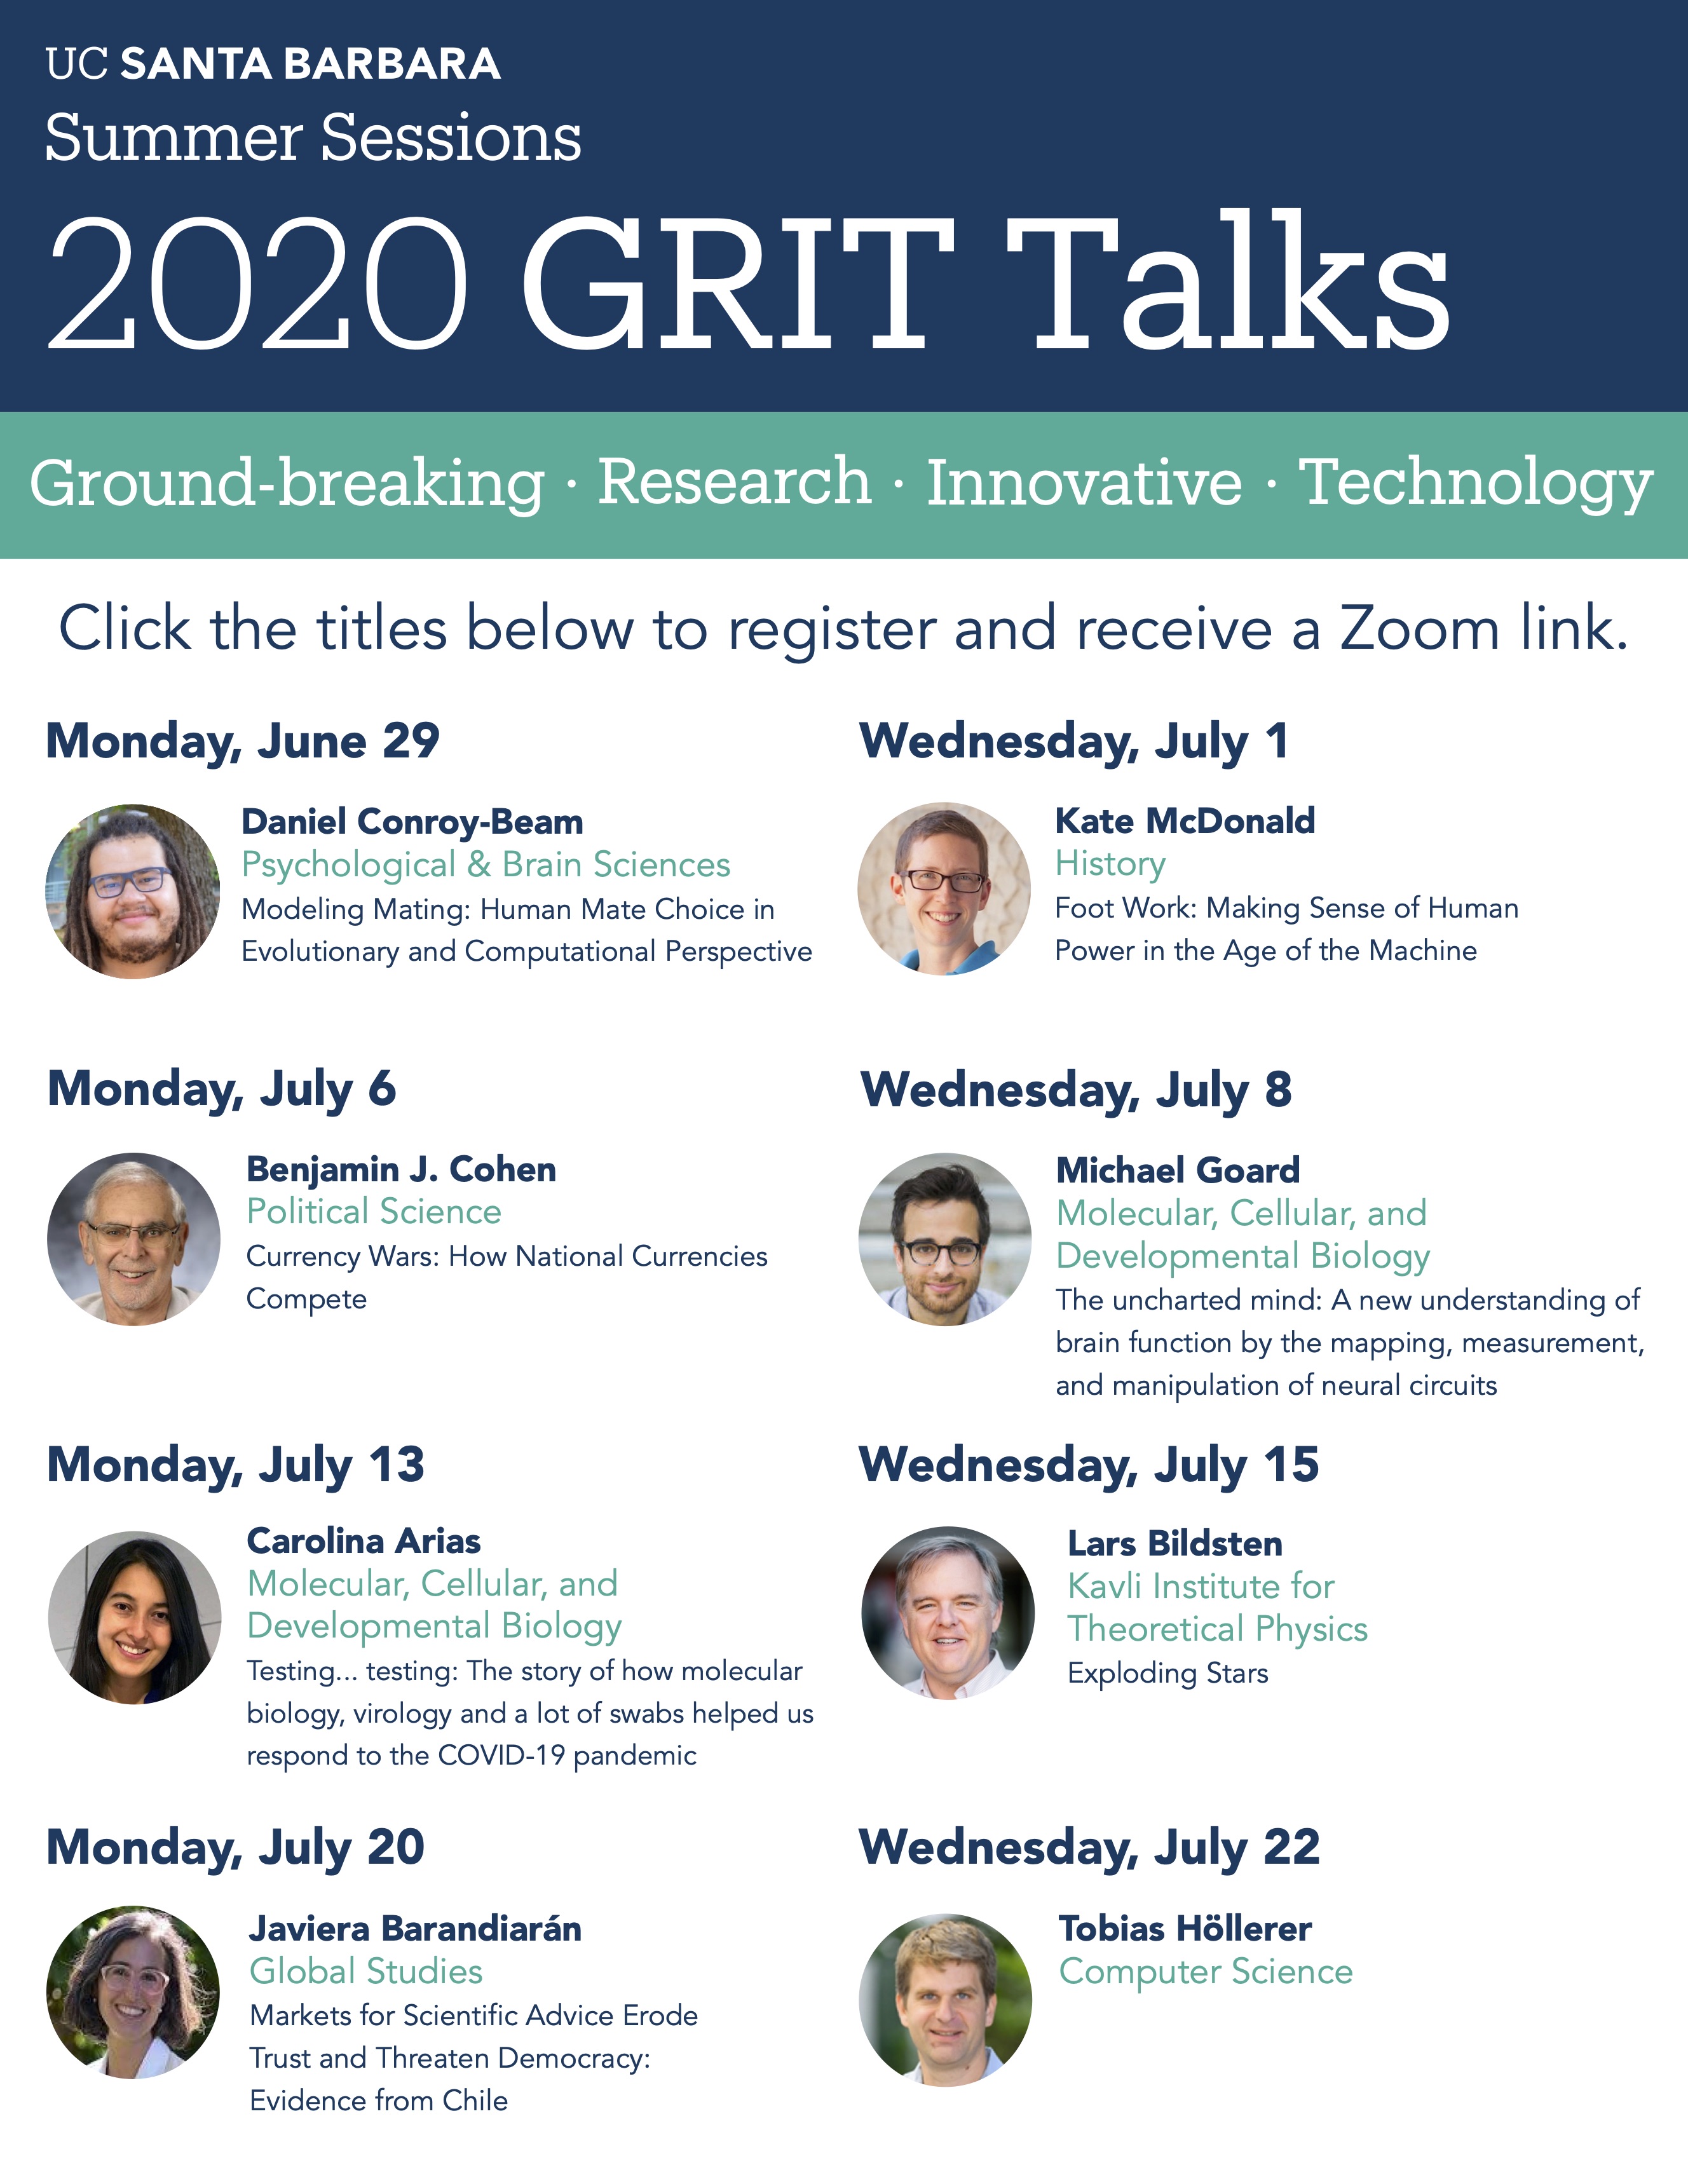 GRIT Talks 2020